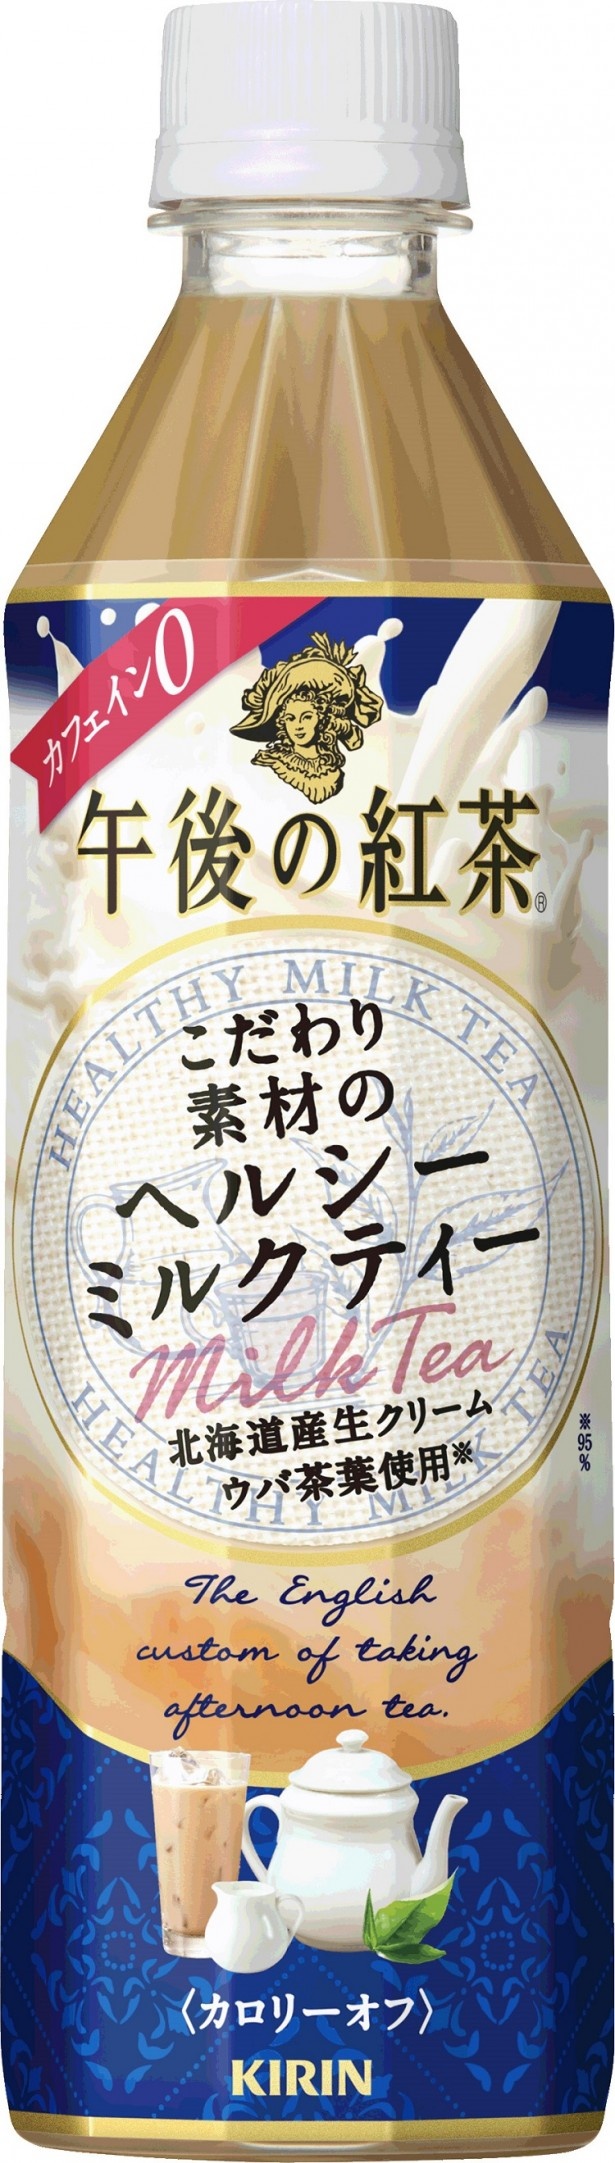 【写真を見る】6月9日(火)発売の｢キリン 午後の紅茶 こだわり素材のヘルシーミルクティー｣(希望小売価格・税抜140円)。カフェインゼロ、カロリーオフで体にやさしい